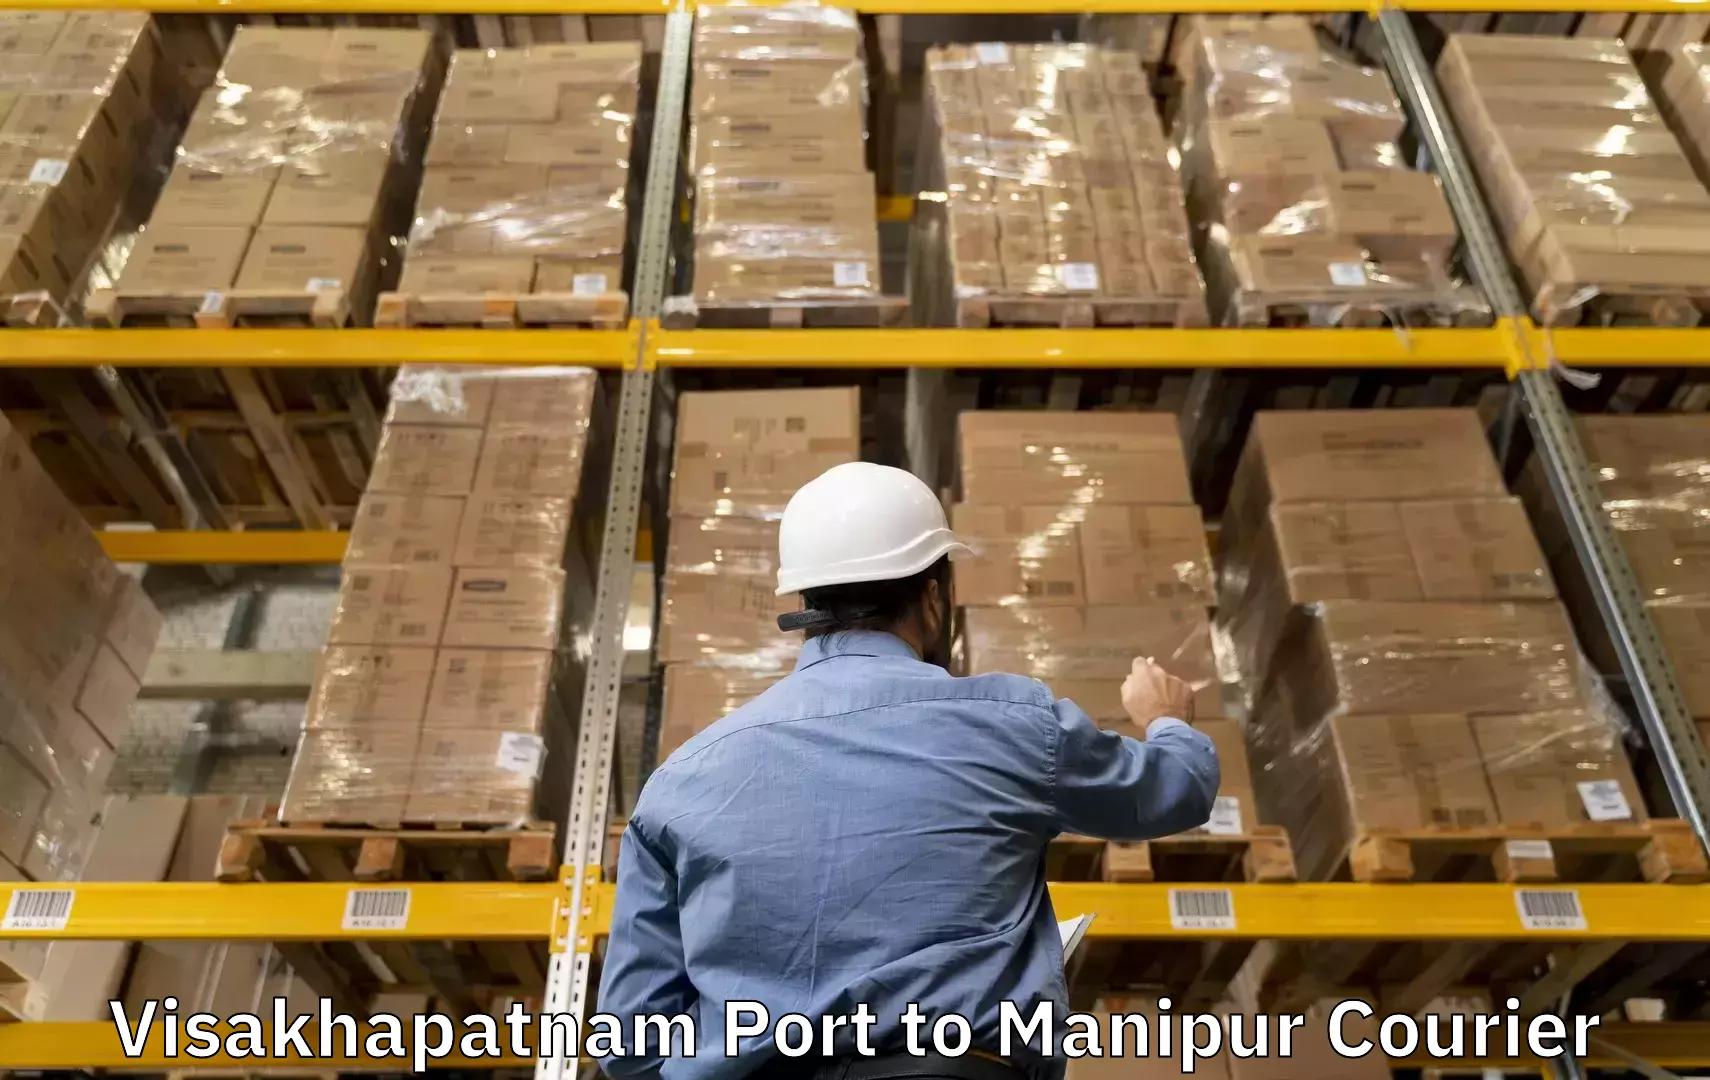 Door-to-door baggage service Visakhapatnam Port to Manipur